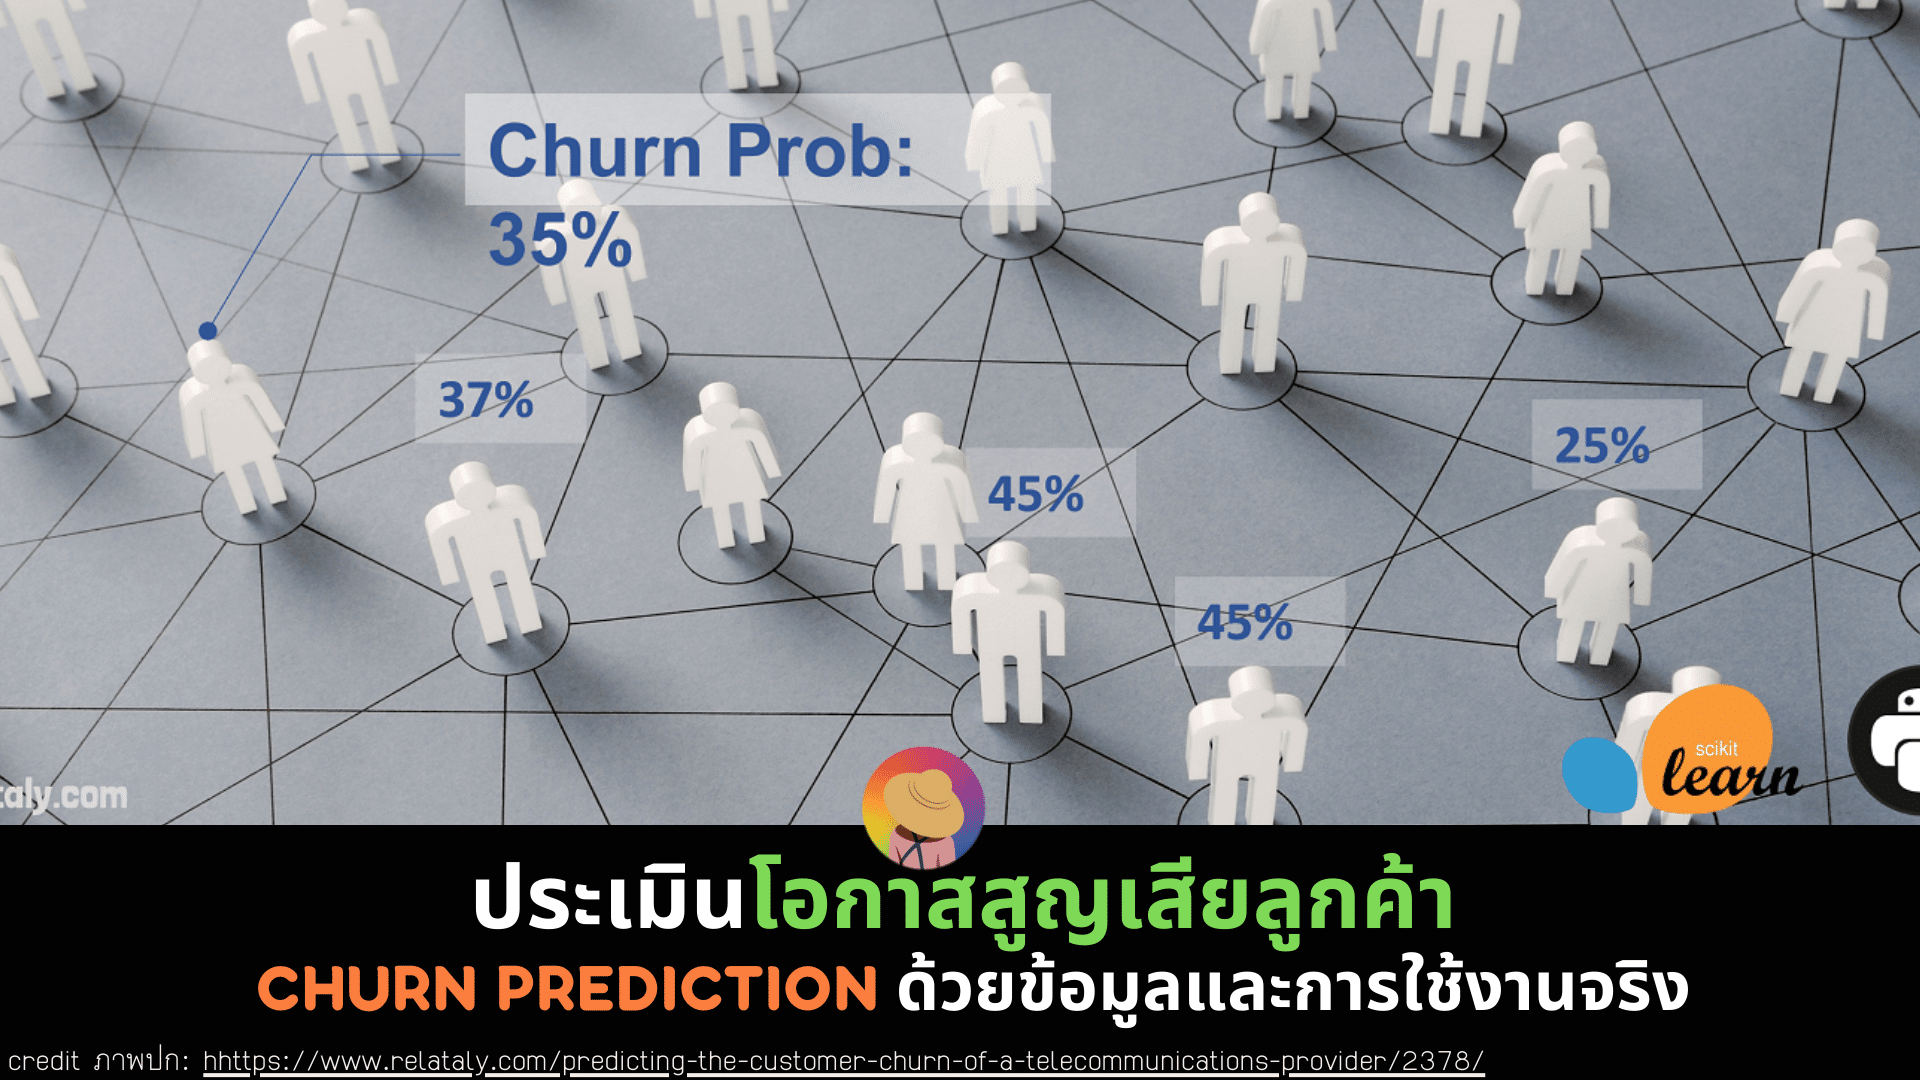 ประเมินโอกาสสูญเสียลูกค้า: Churn Prediction ด้วยข้อมูลและการใช้งานจริง